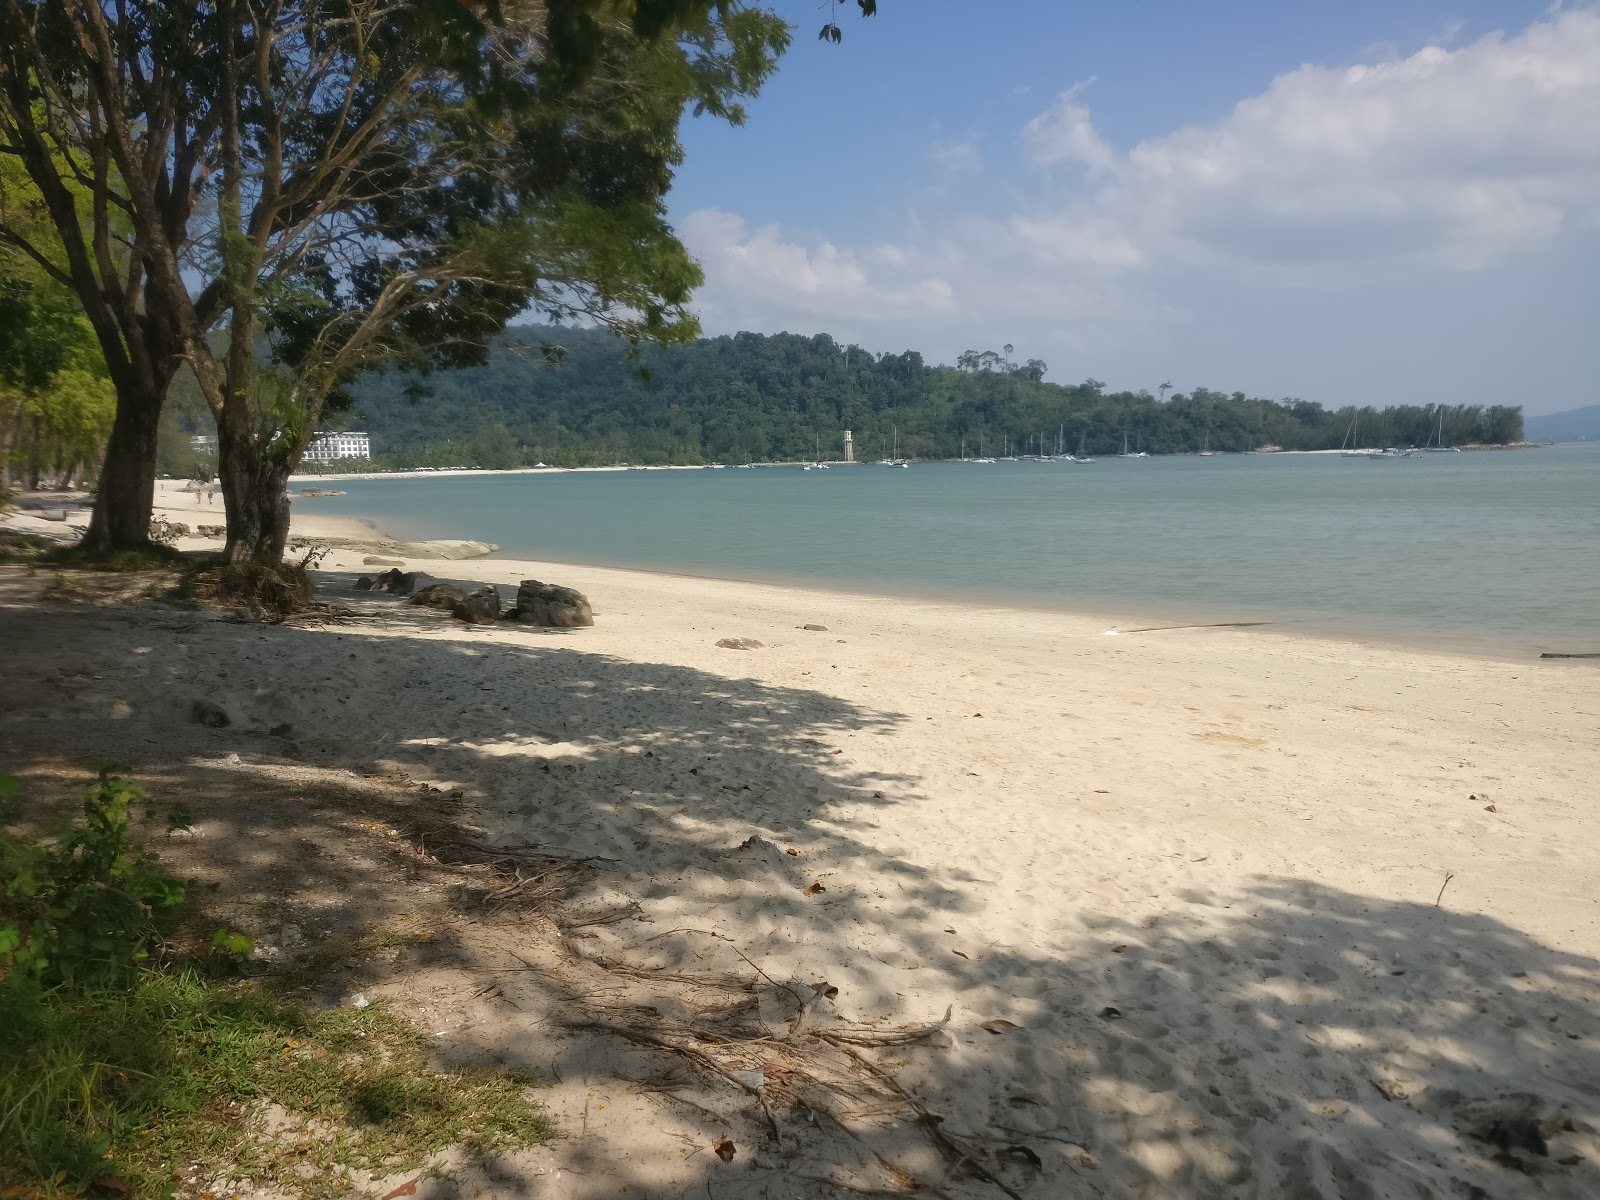 Kok Langkawi Beach'in fotoğrafı geniş plaj ile birlikte